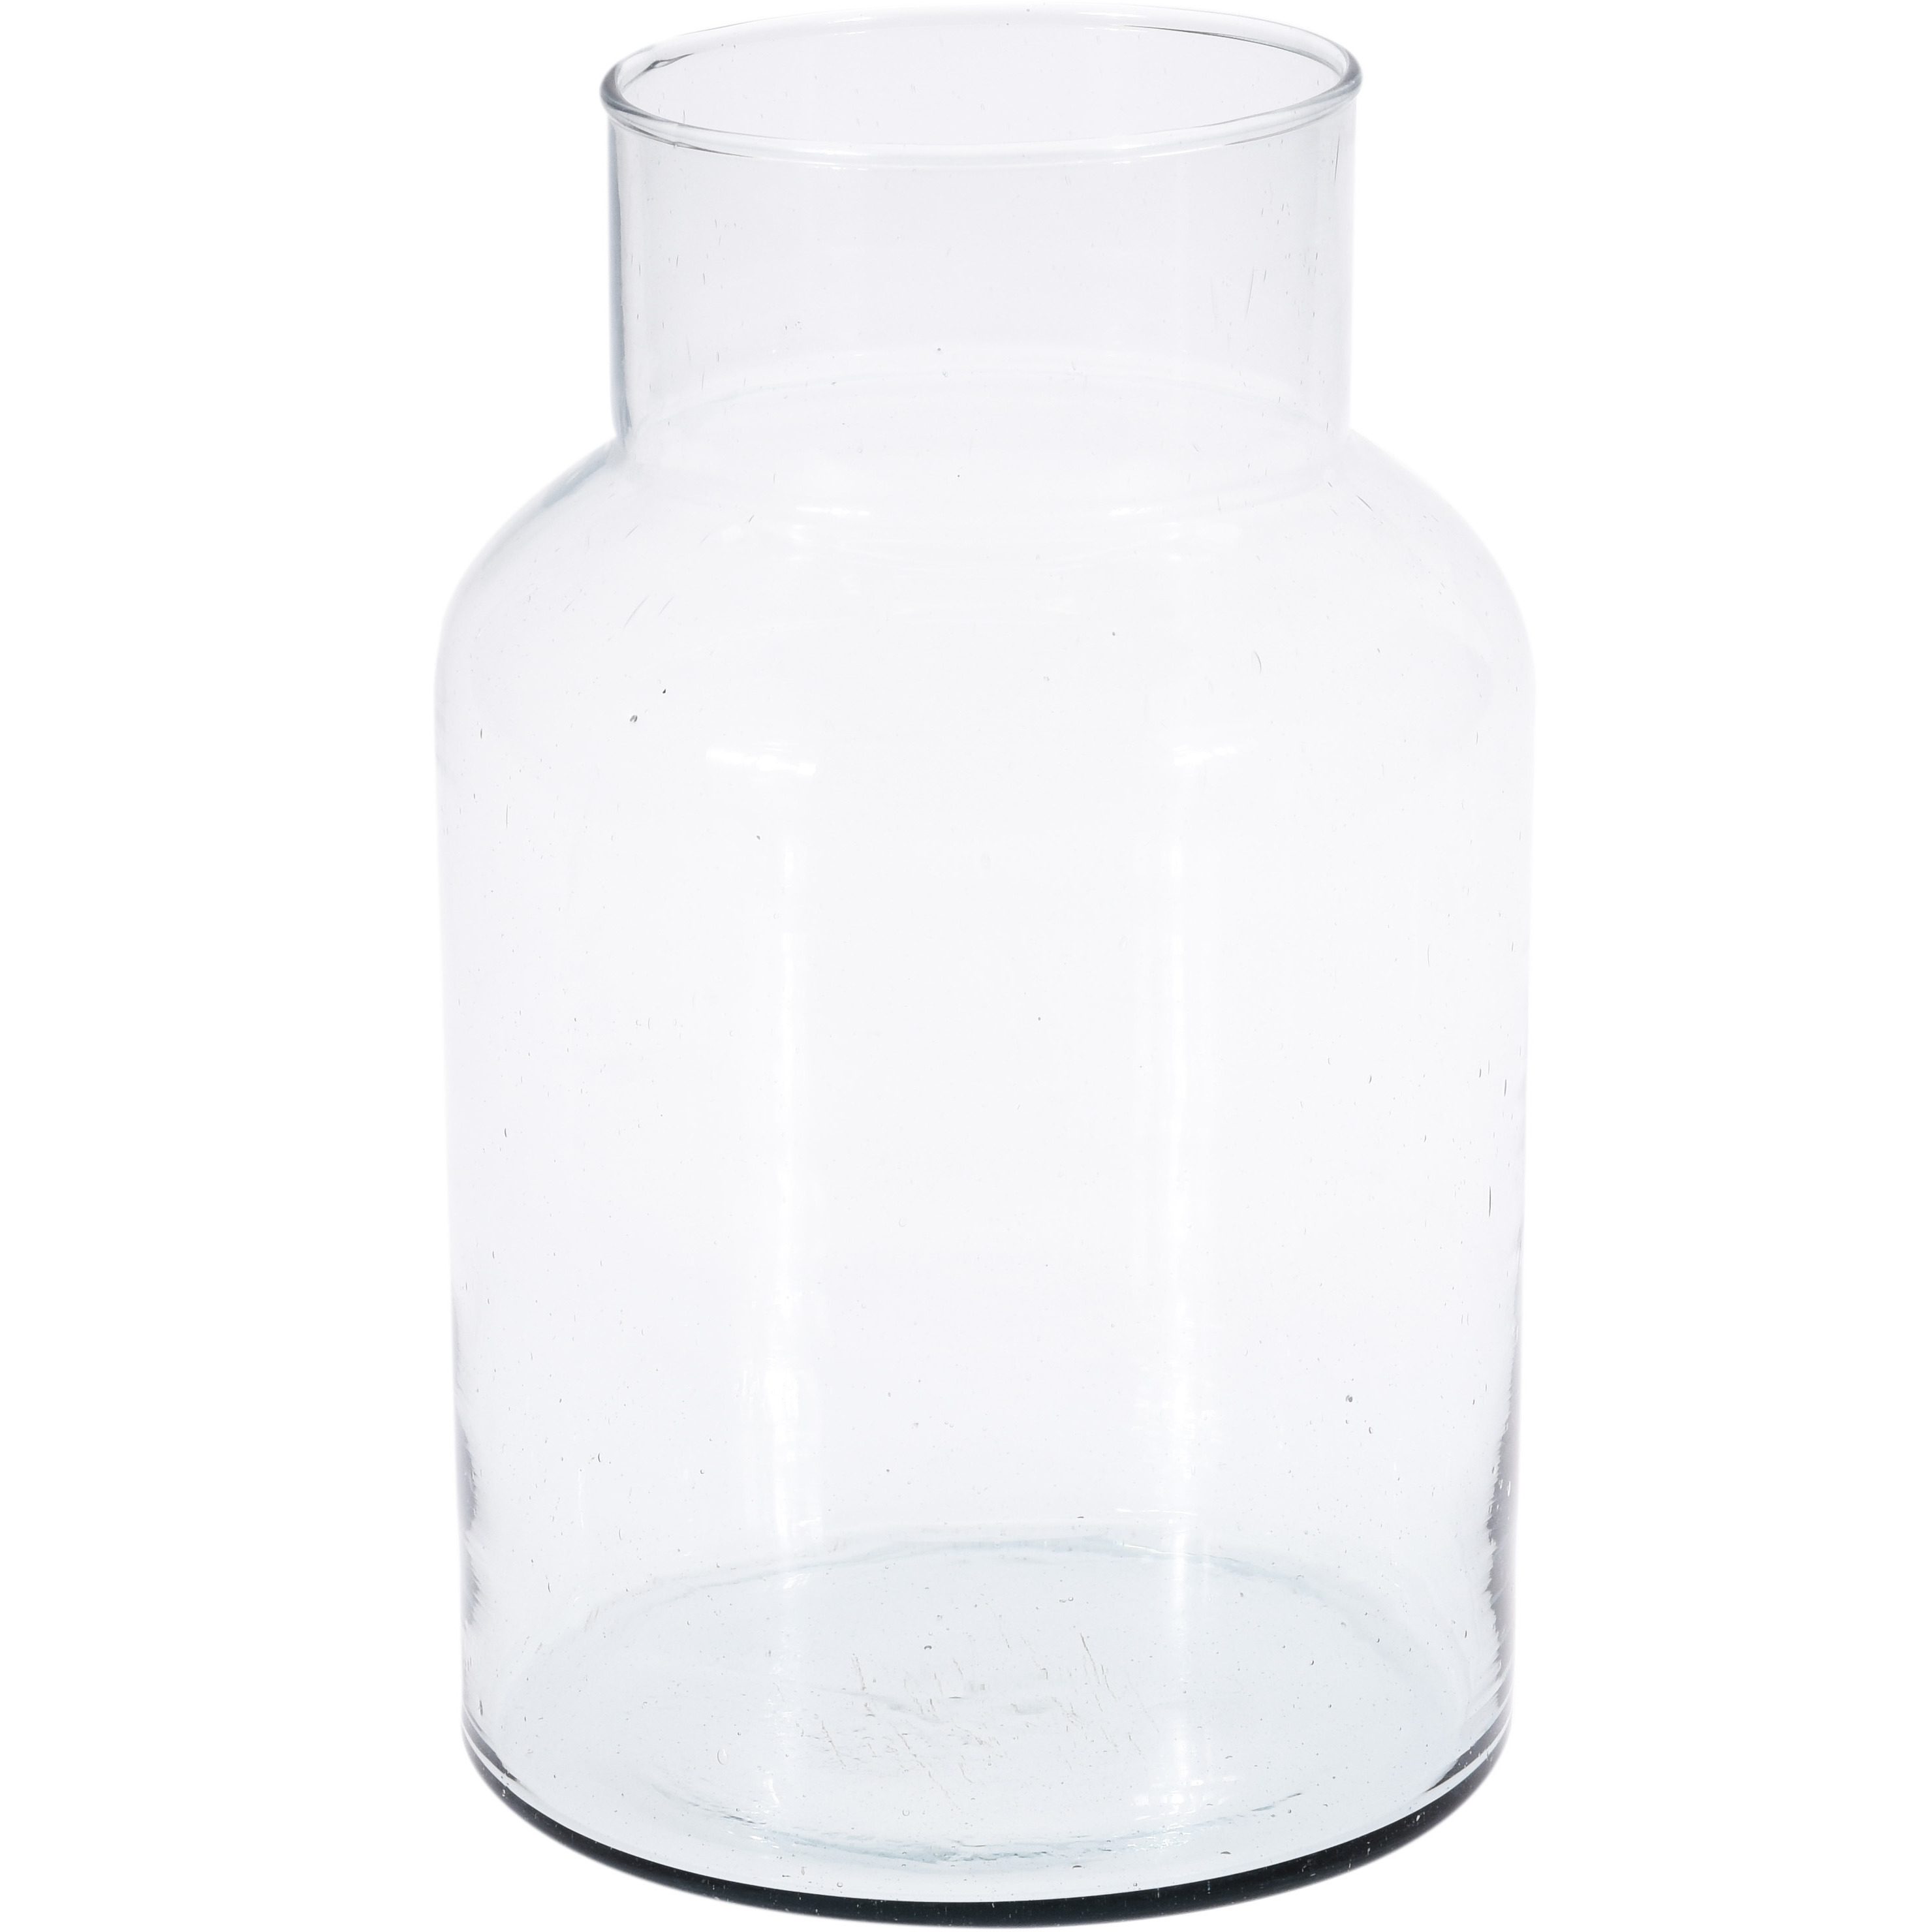 1x Glazen vaas/vazen 5 liter van 14 x 26 cm